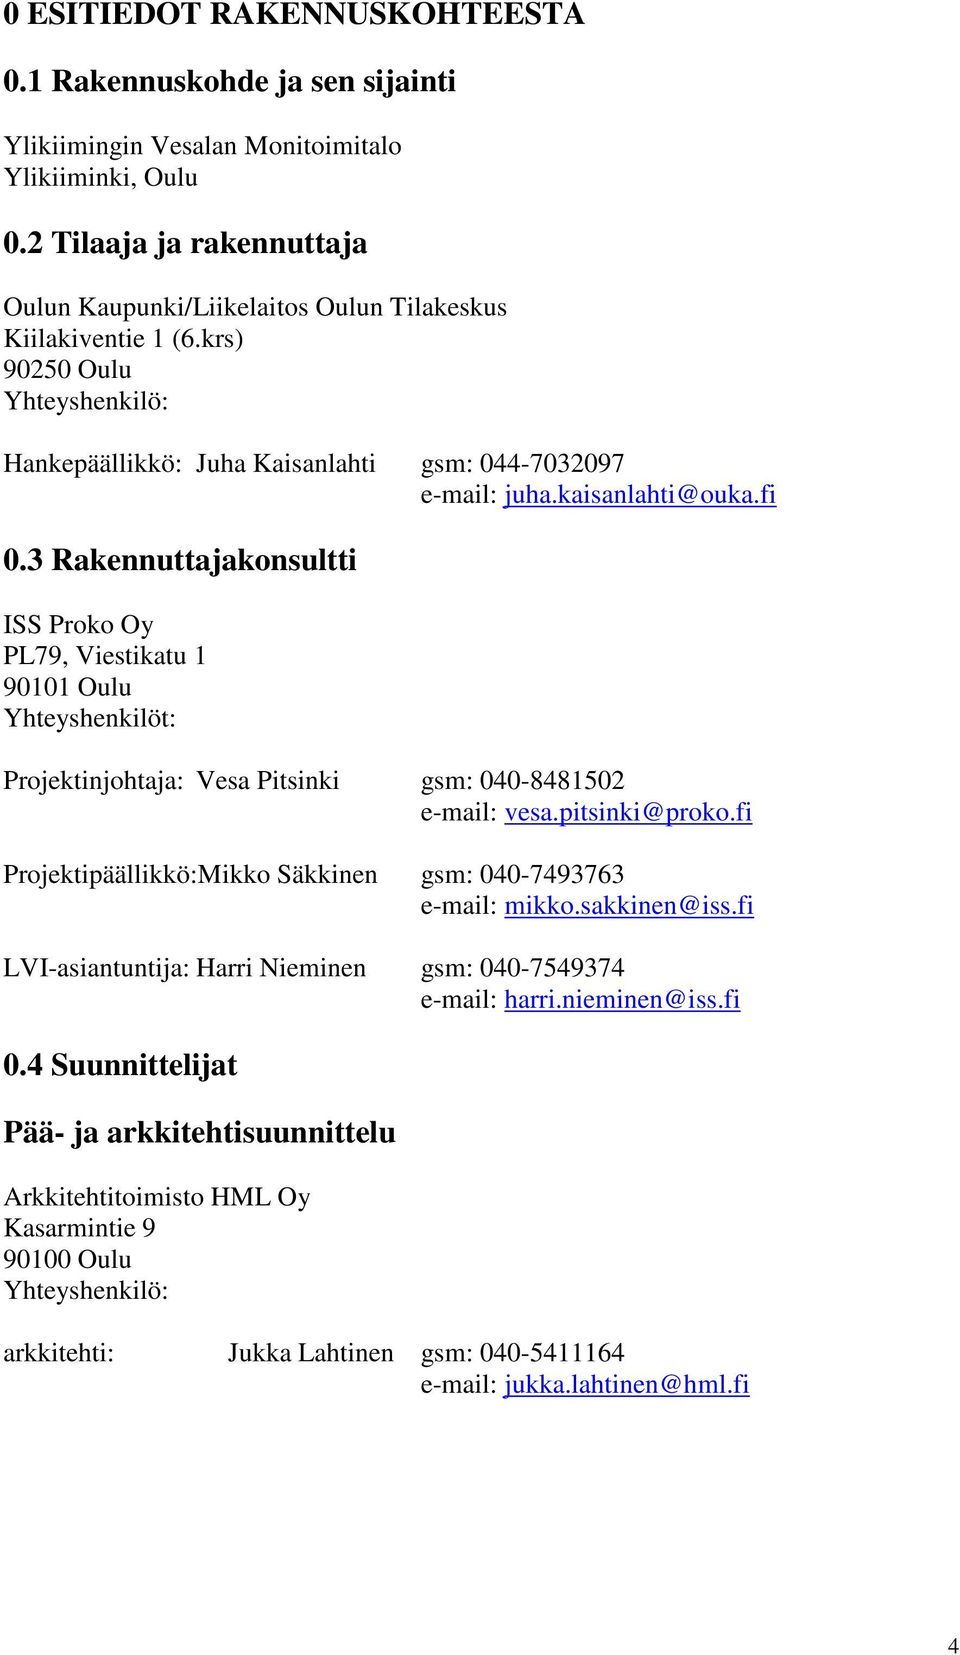 fi 0.3 Rakennuttajakonsultti ISS Proko Oy PL79, Viestikatu 1 90101 Oulu Yhteyshenkilöt: Projektinjohtaja: Vesa Pitsinki gsm: 040-8481502 e-mail: vesa.pitsinki@proko.